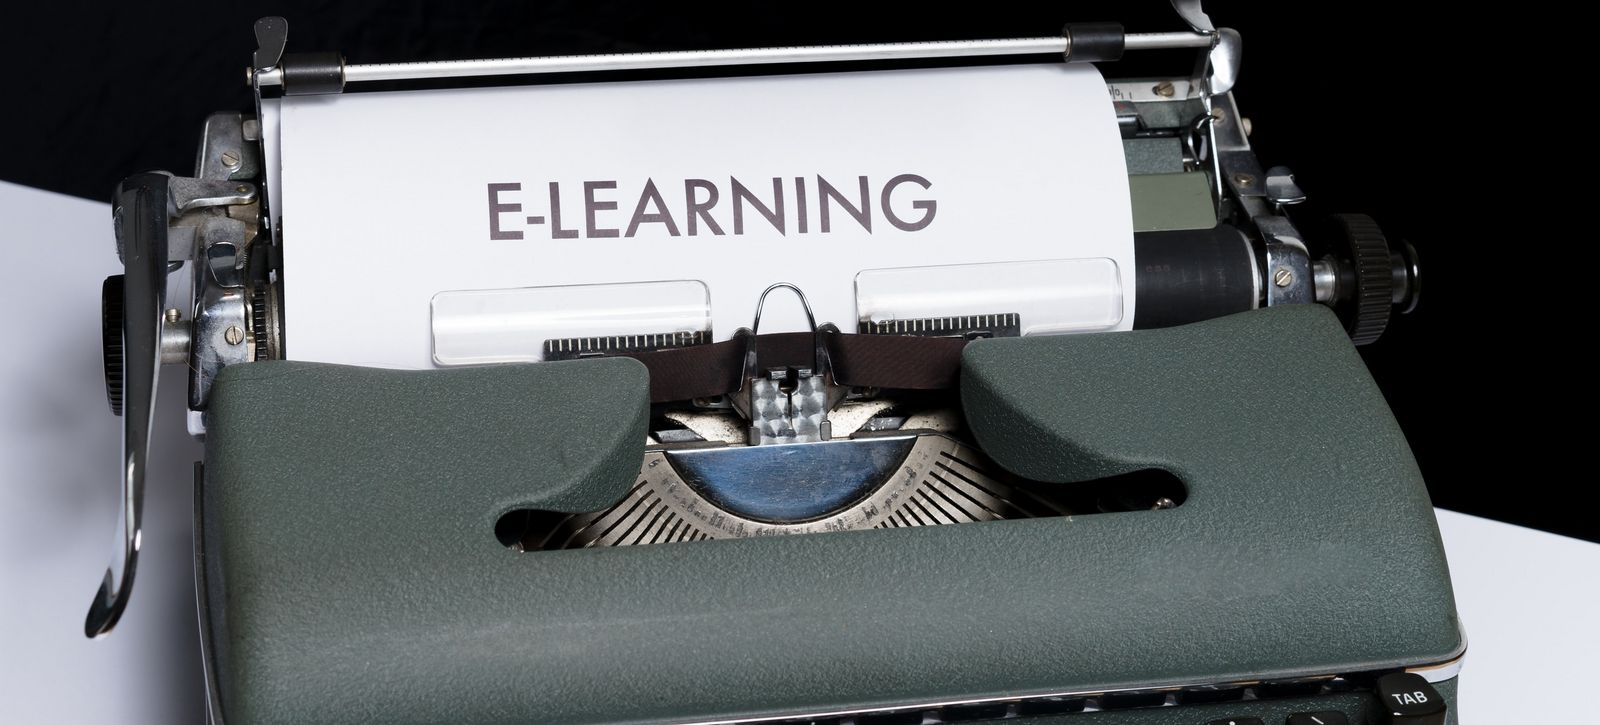 In einer alten, analogen Schreibmaschine steckt ein Blatt Papier, auf dem E-Learning steht